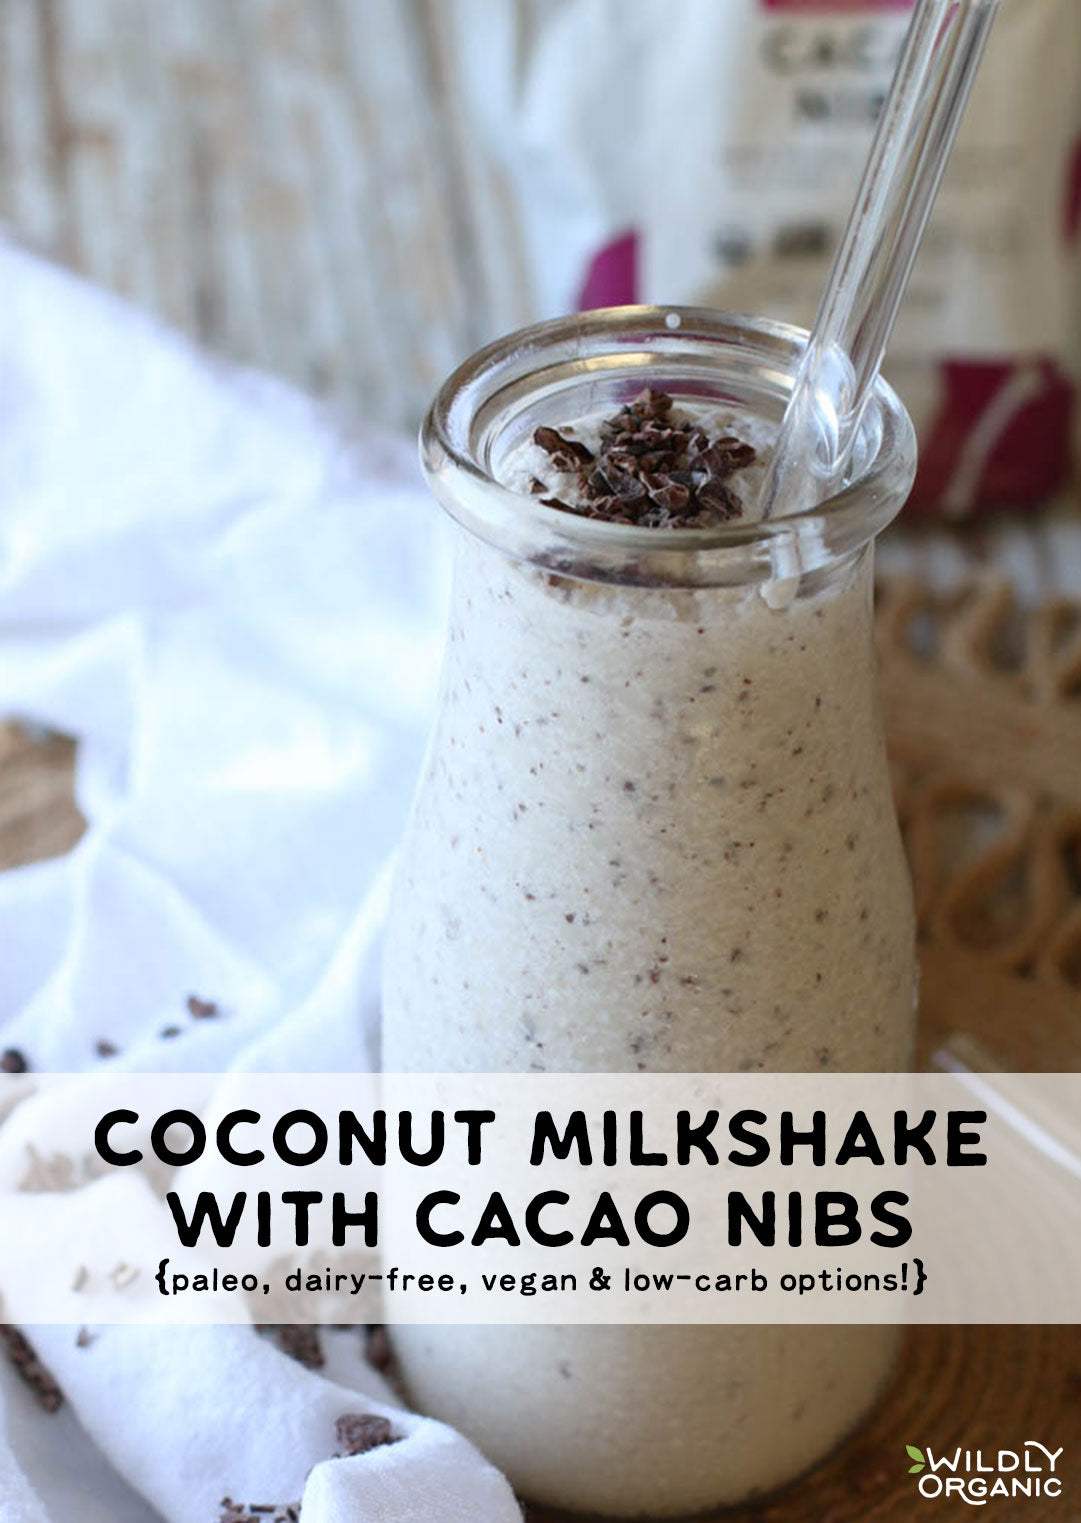 Widly Coconut Milkshake with Cacao Nibs Recipe